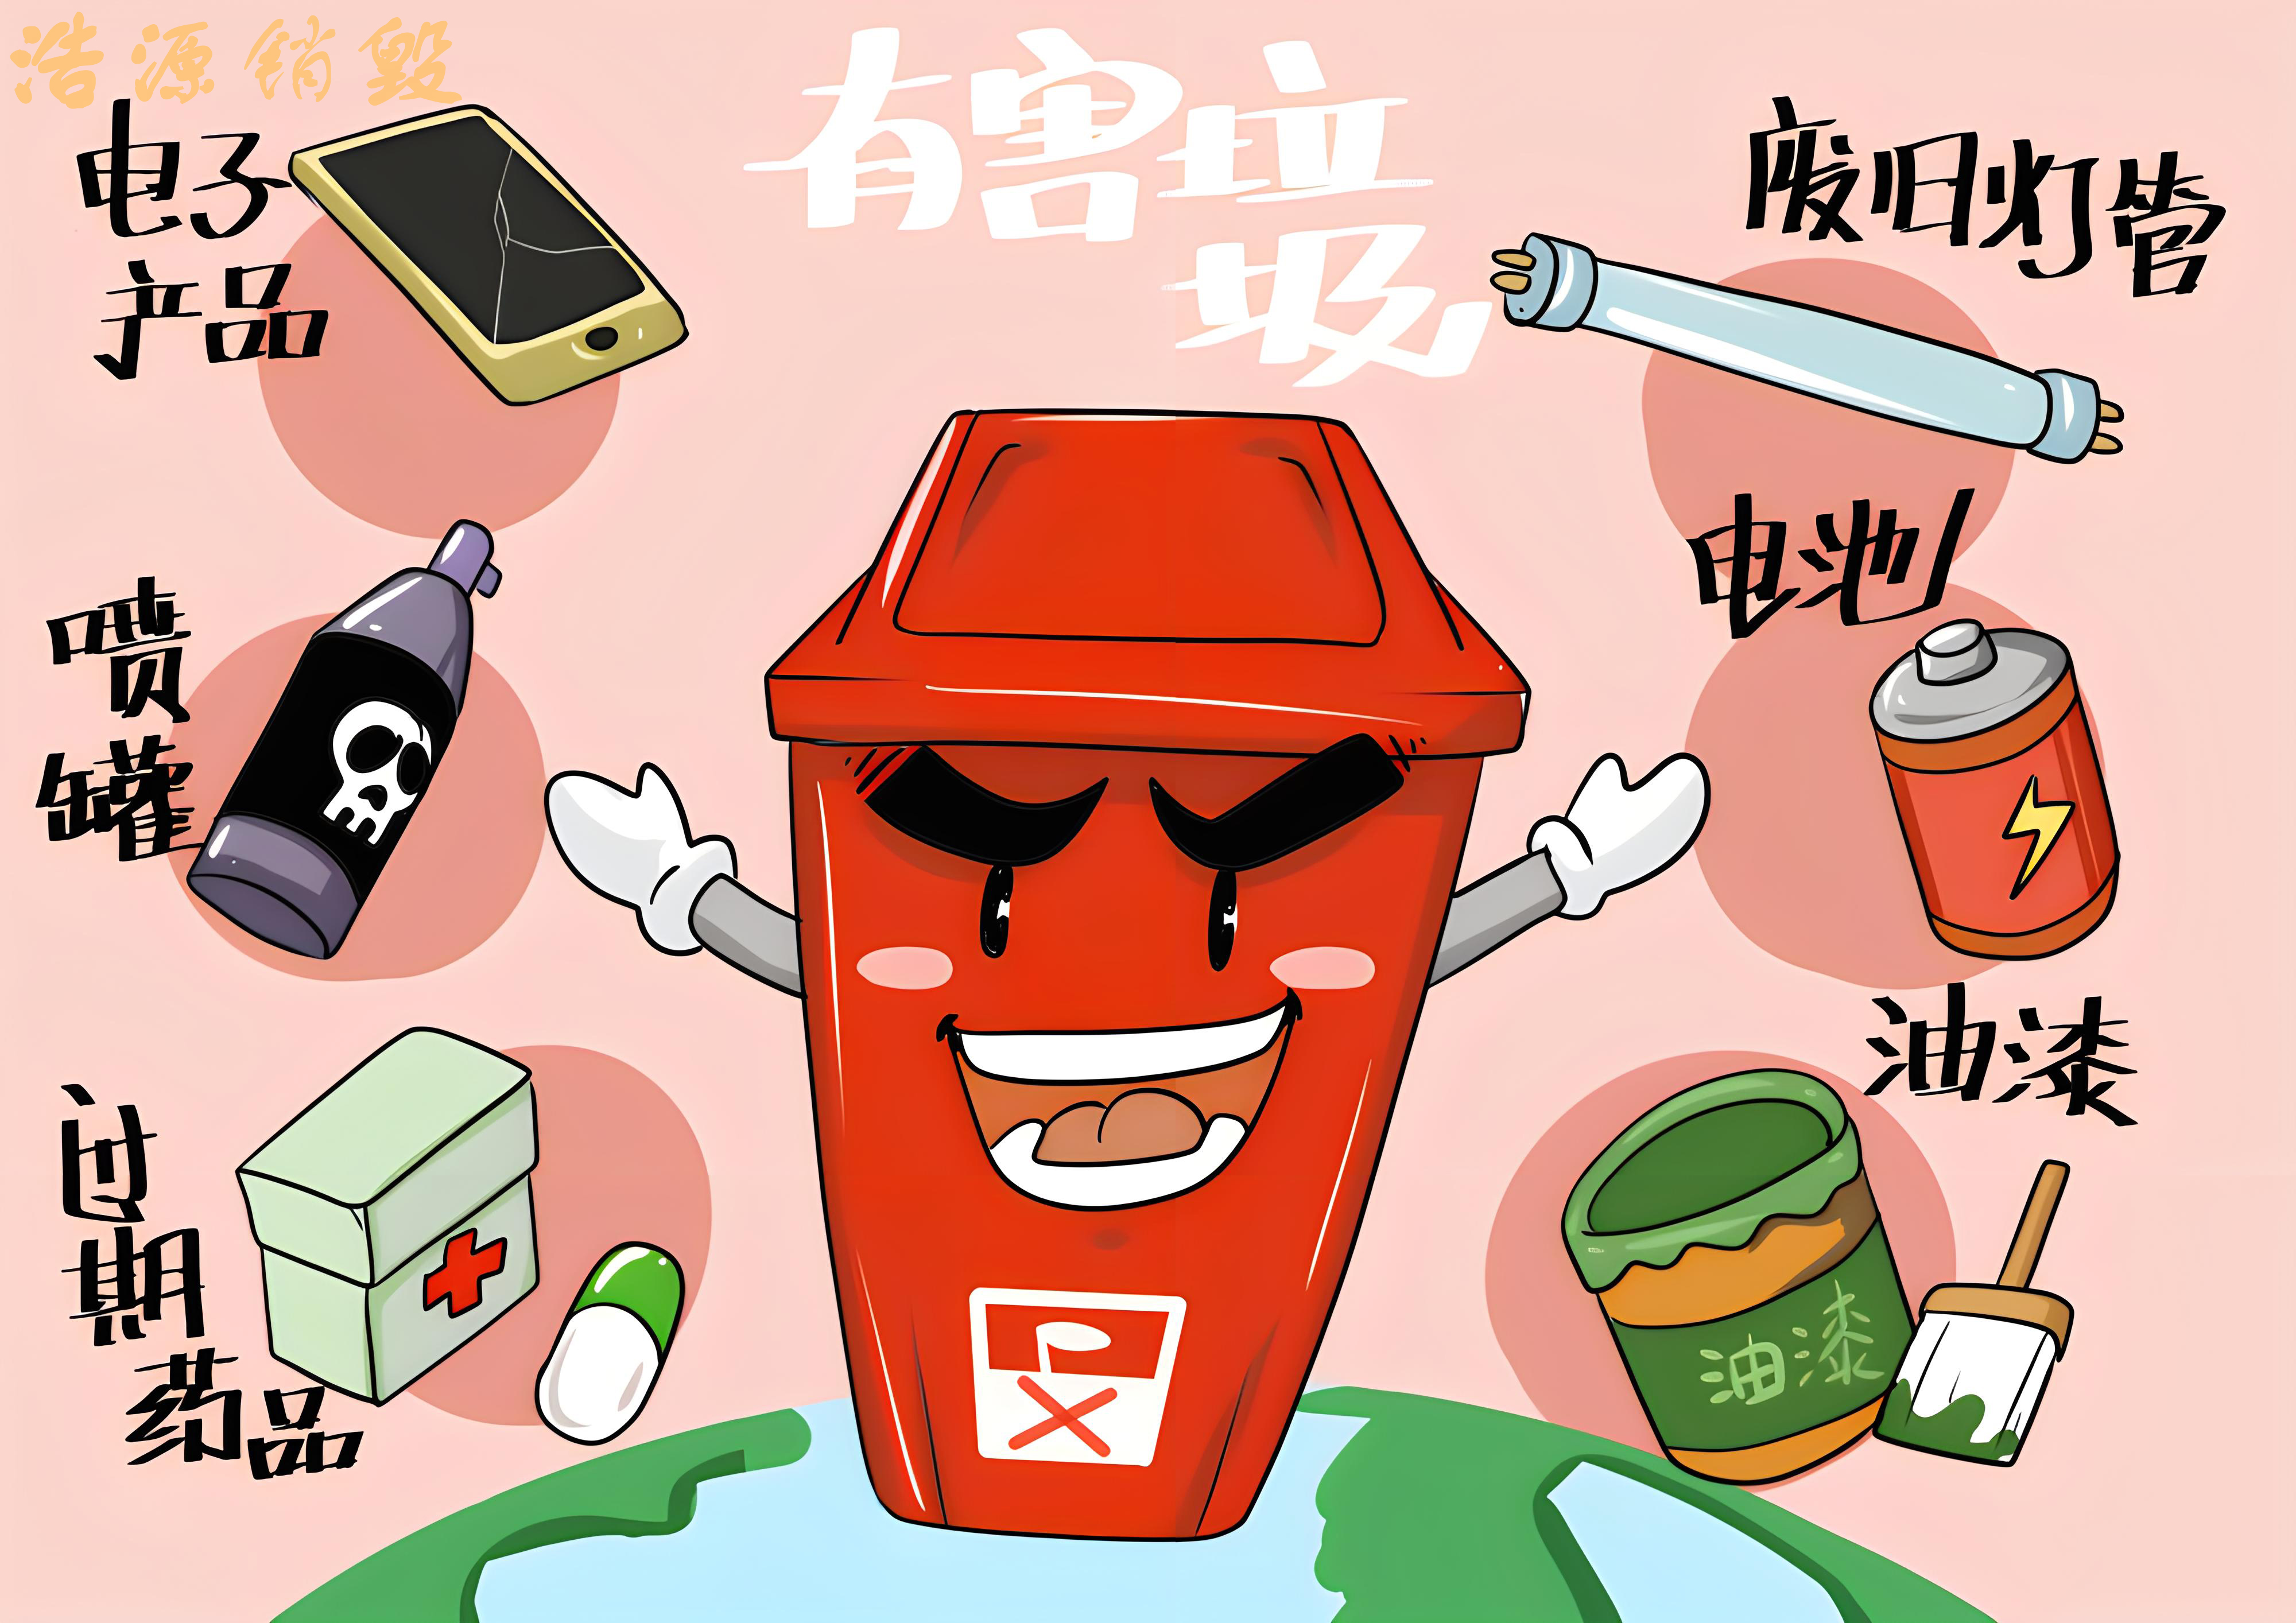 广州电子产品回收销毁处理| 电子产品处理资质-回收资质-涉密载体处理